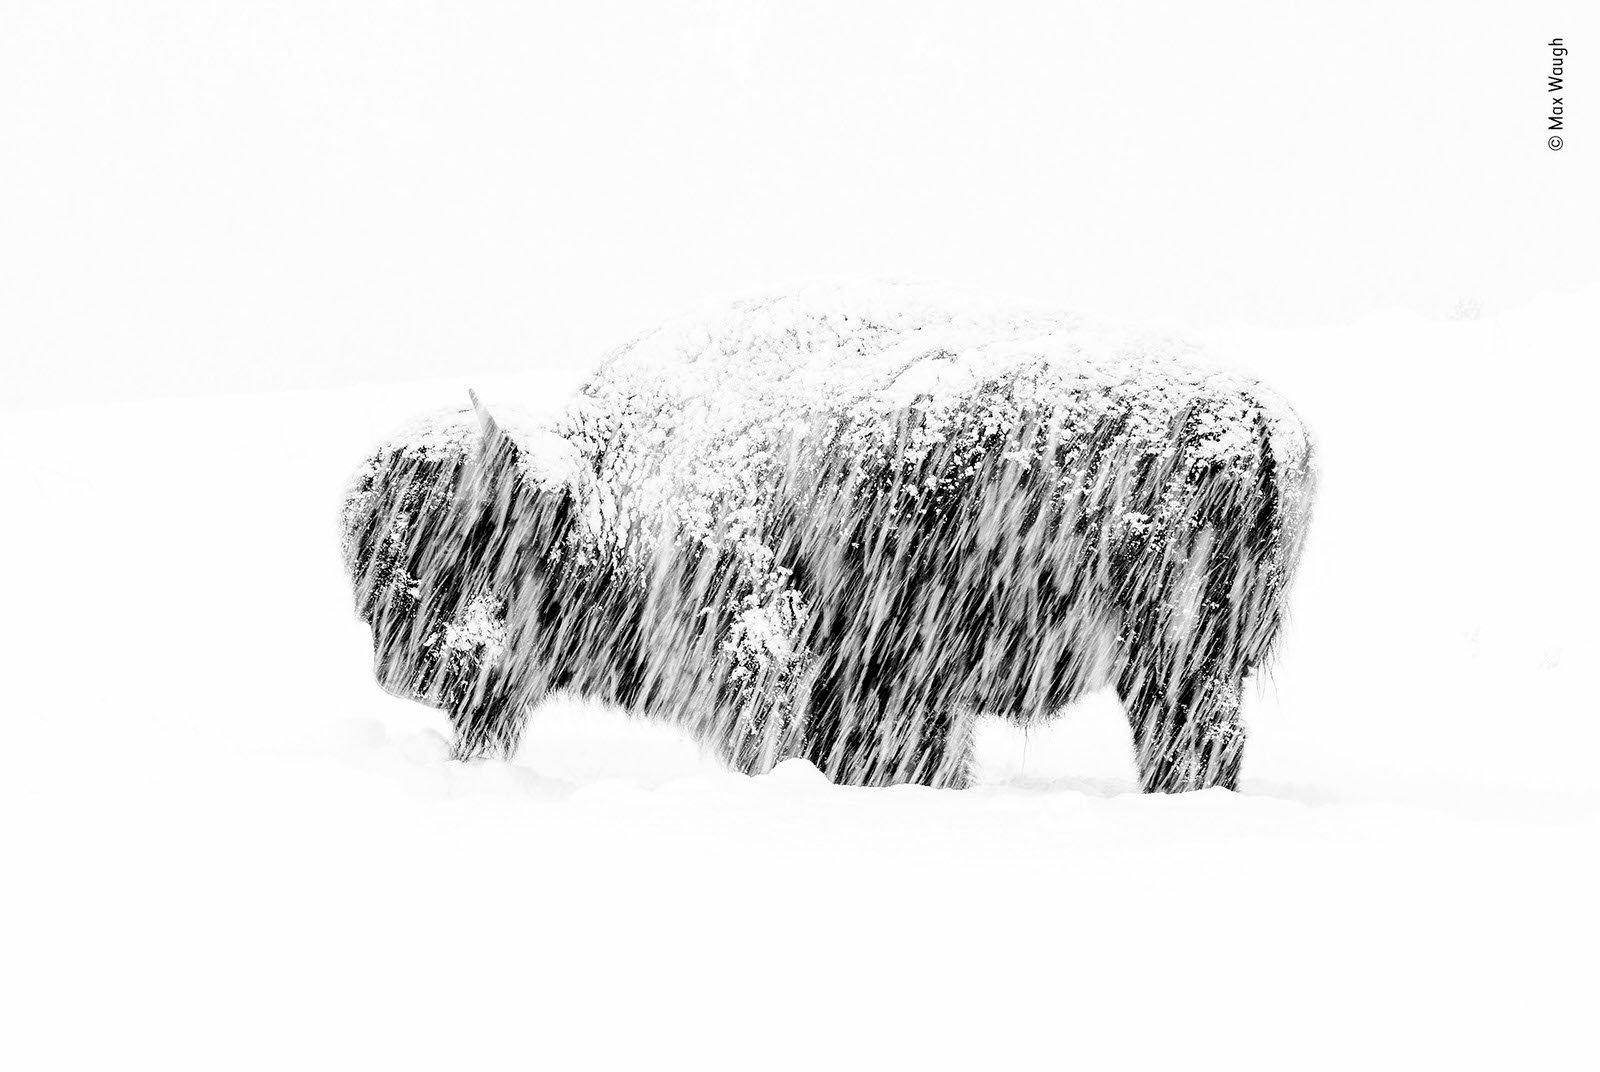 “Exposición a la nieve” por Max Waugh, Estados Unidos. Ganador de blanco y negro.